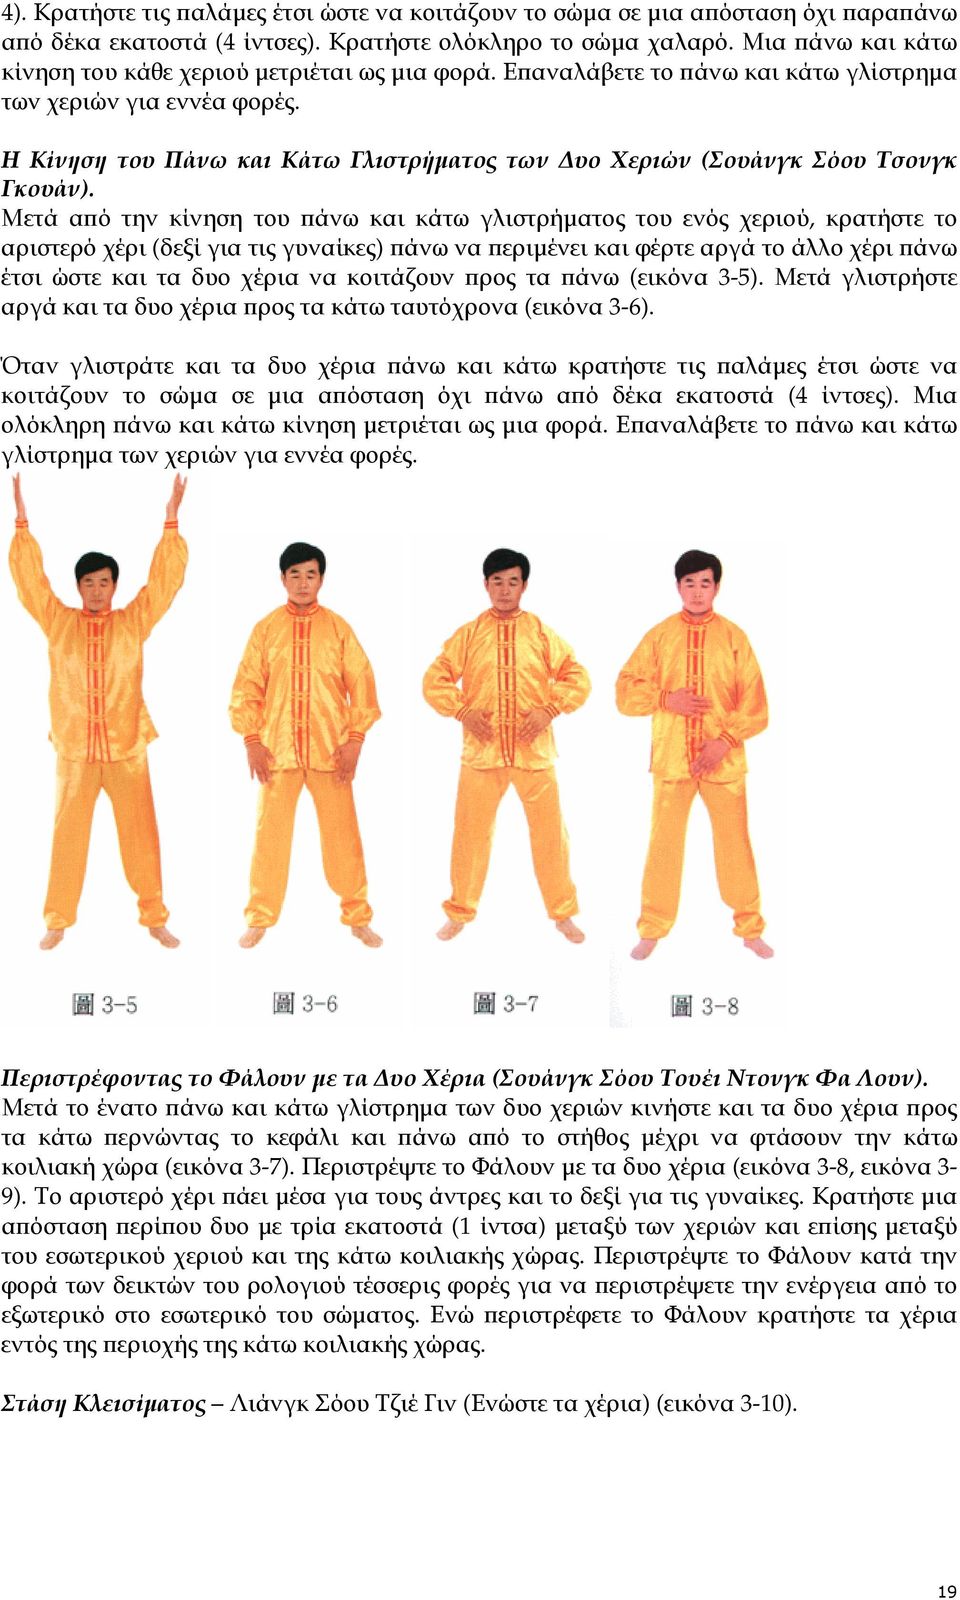 Η Κίνηση του Πάνω και Κάτω Γλιστρήµατος των υο Χεριών (Σουάνγκ Σόου Τσονγκ Γκουάν).